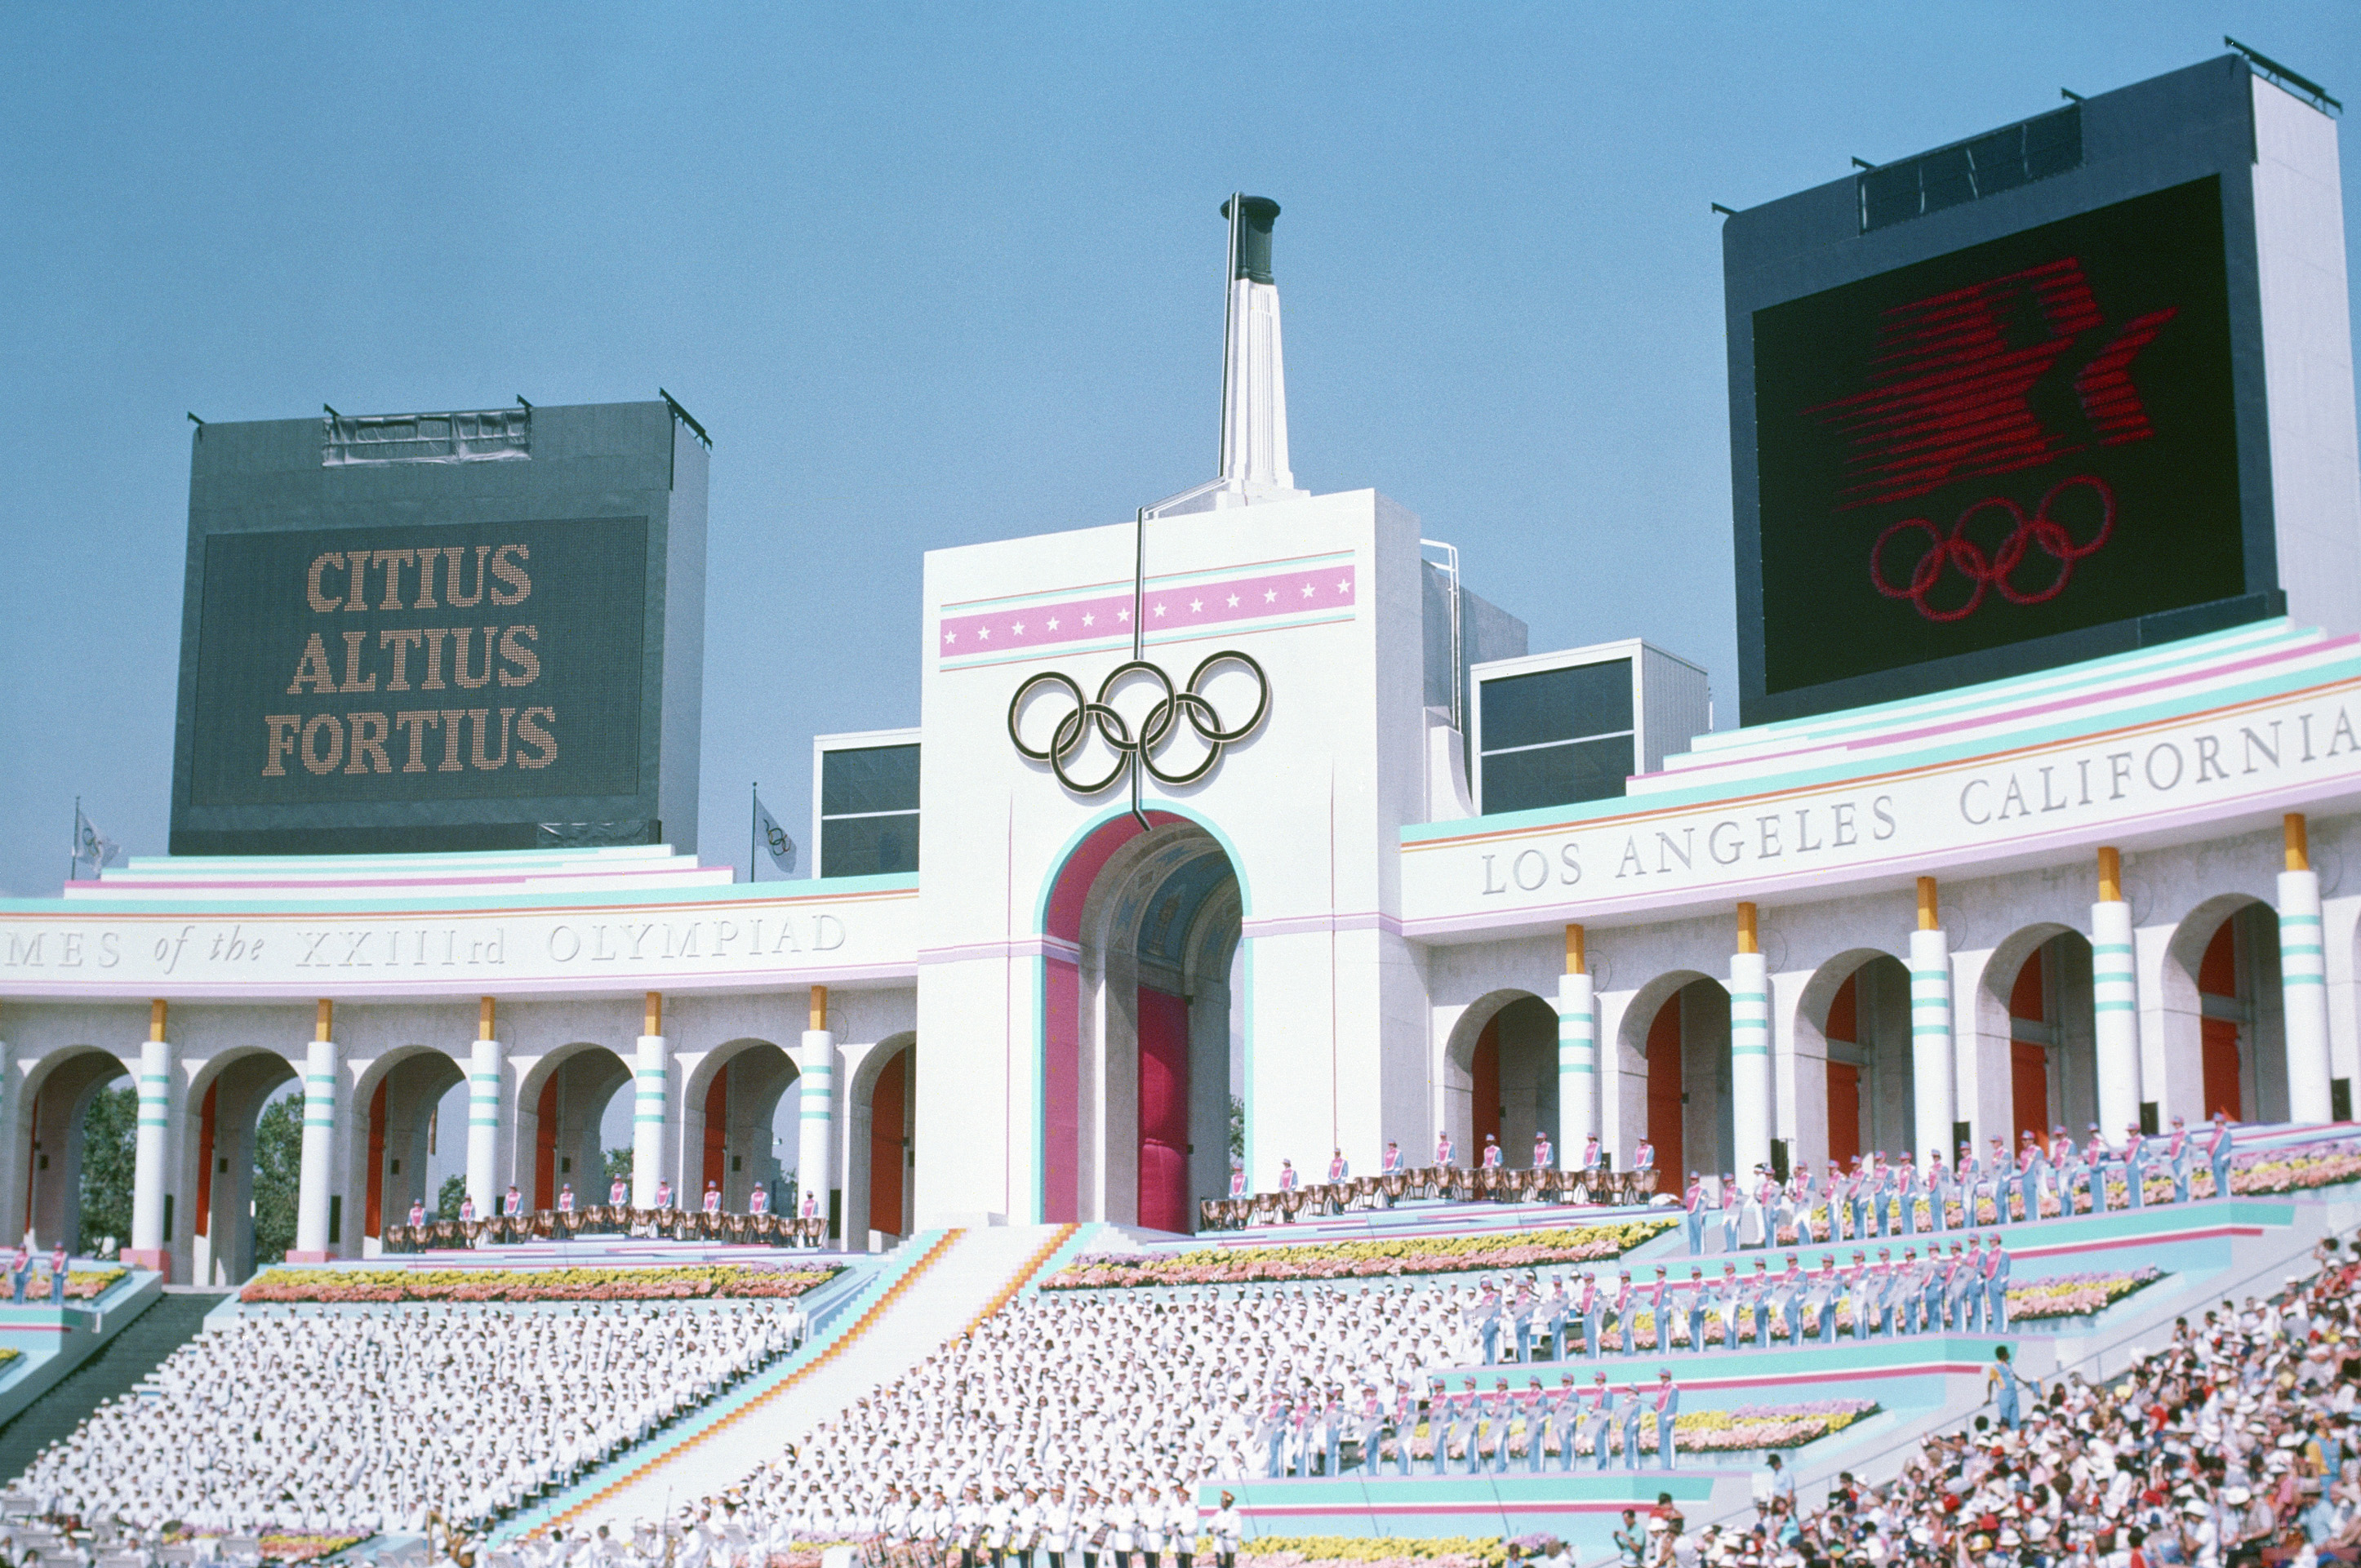 La cerimonia di apertura delle Olimpiadi 1984, disputate a Los Angeles